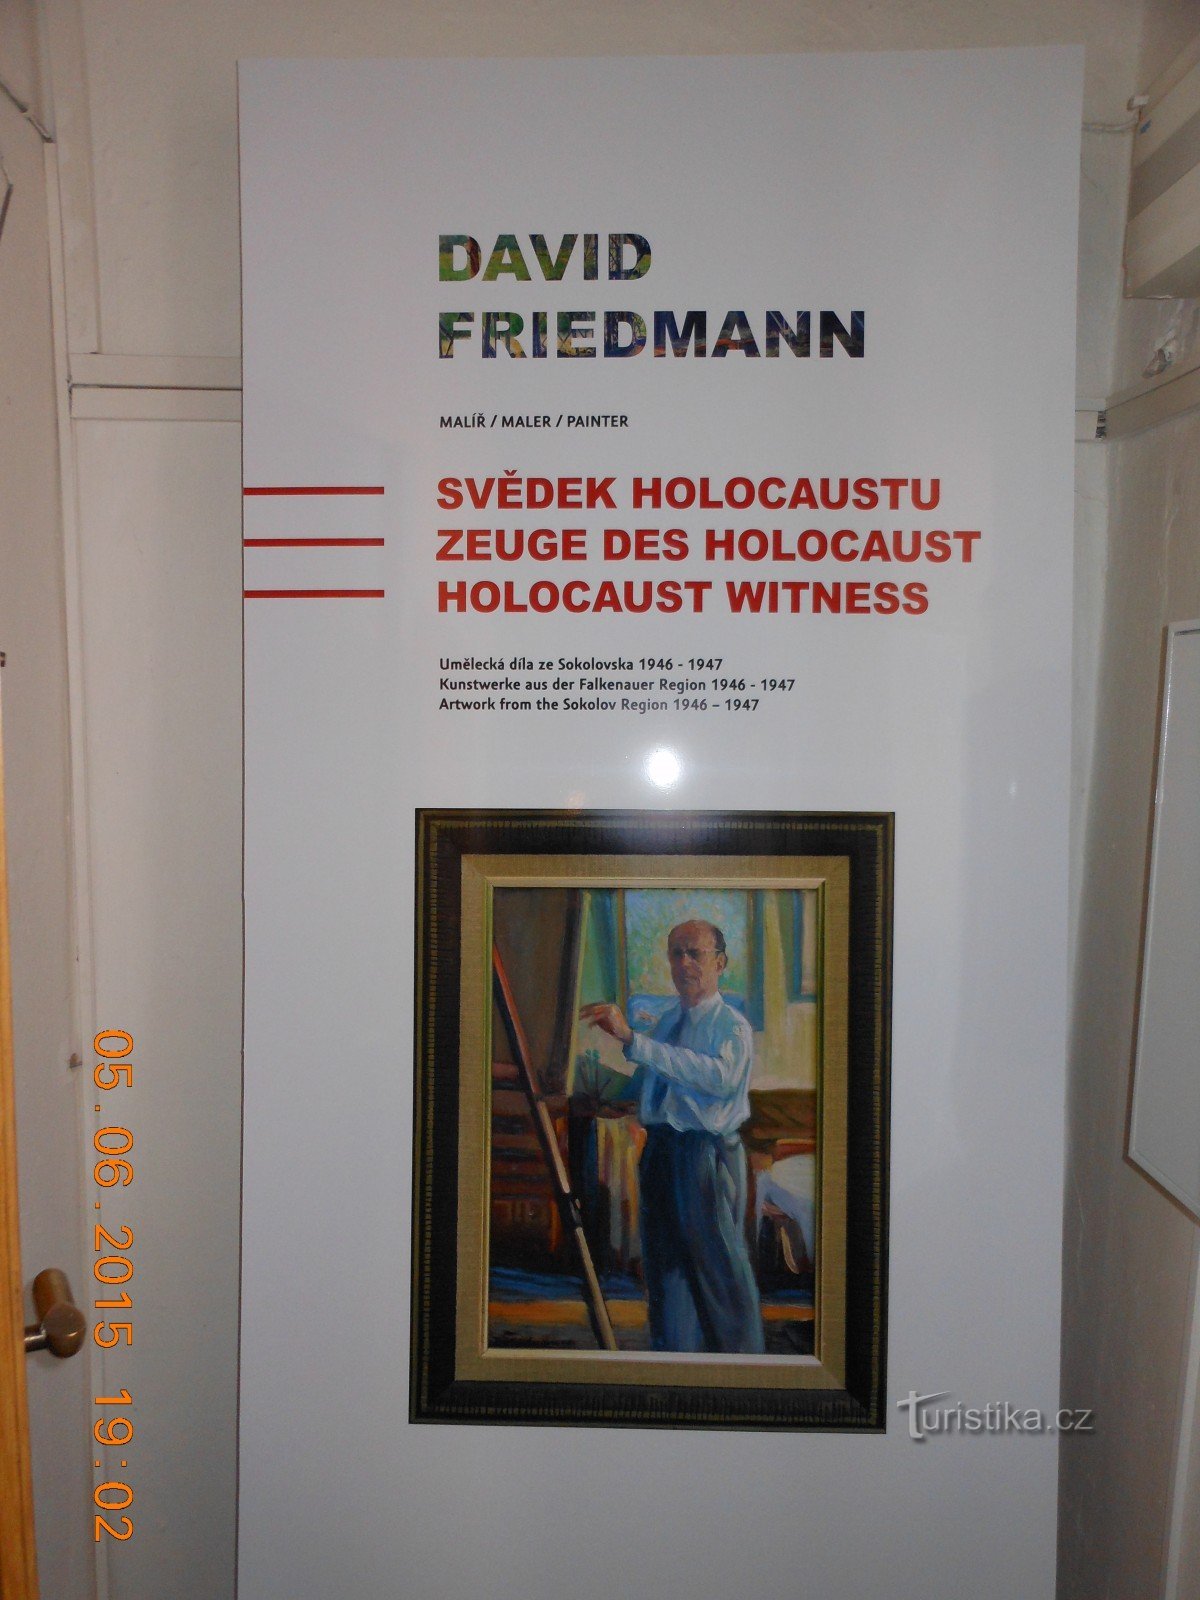 Triển lãm DAVID FRIEDMANN - Bảo tàng Sokolov